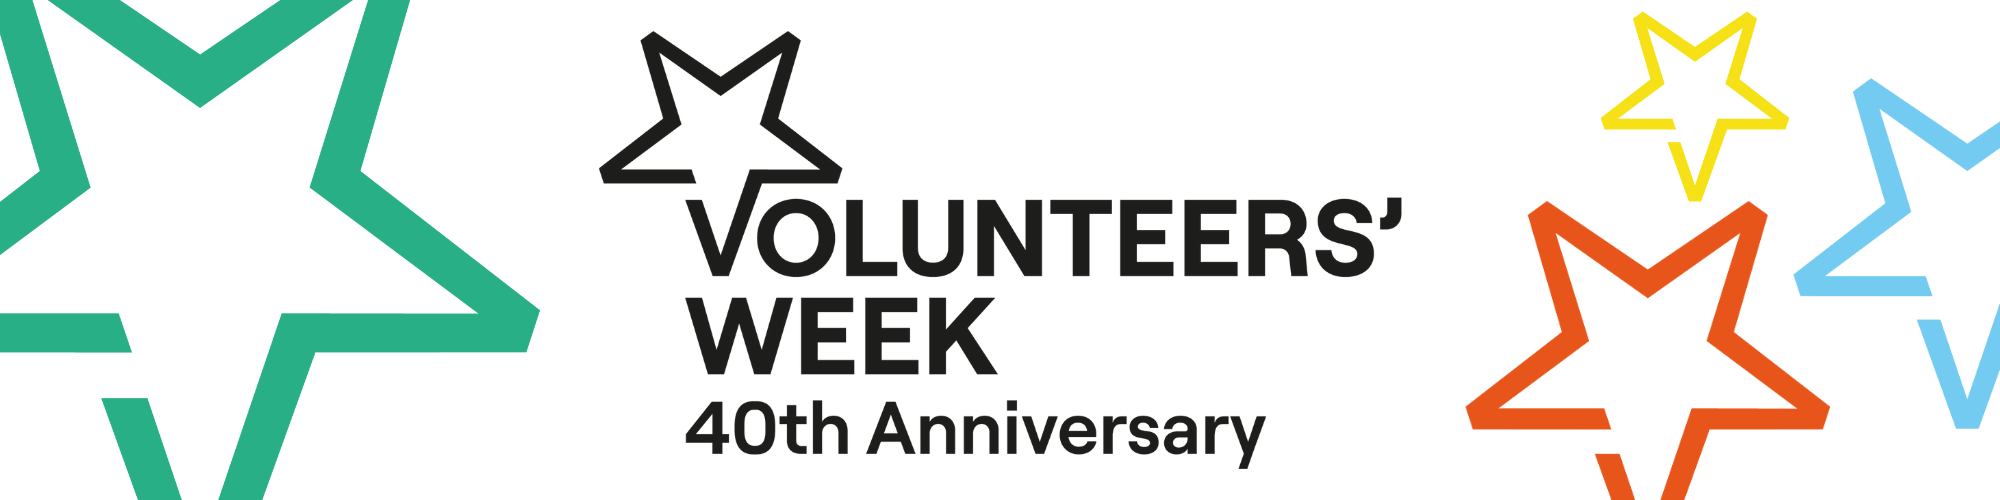 Volunteers' Week banner